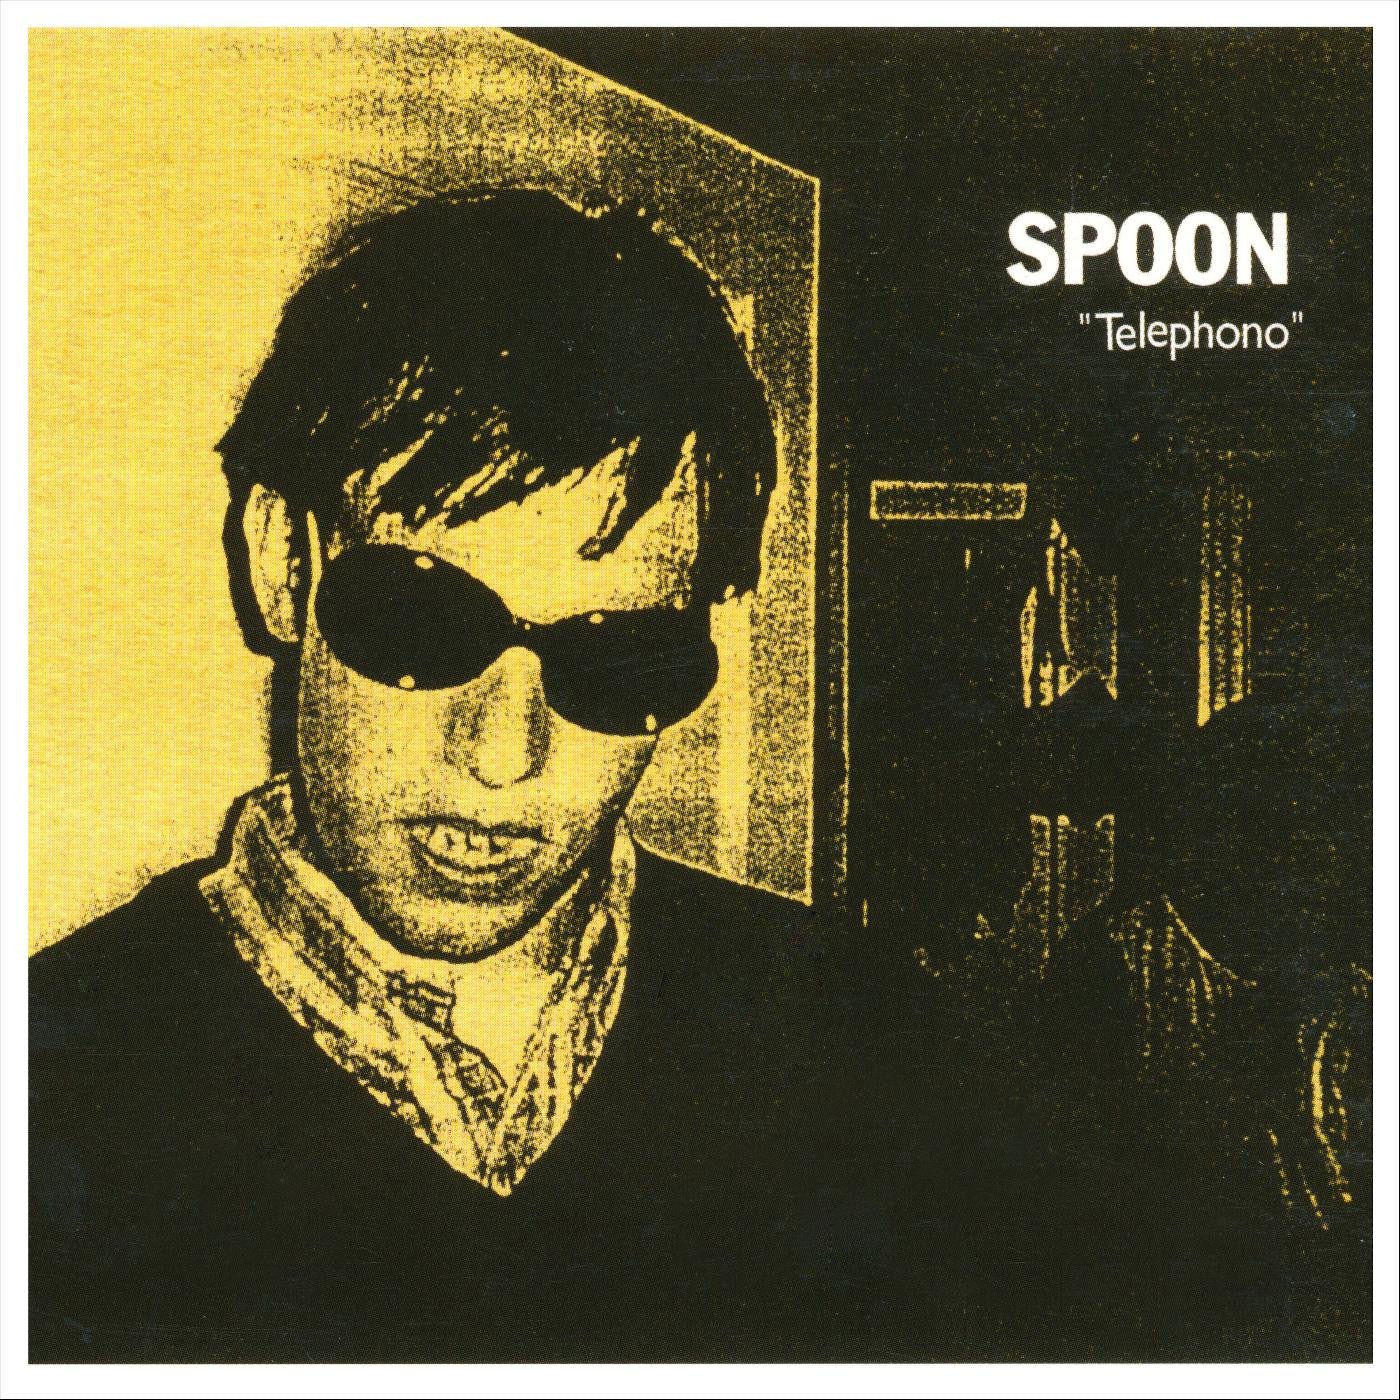 Spoon - Telephono - 191401148917 - LP's - Yellow Racket Records